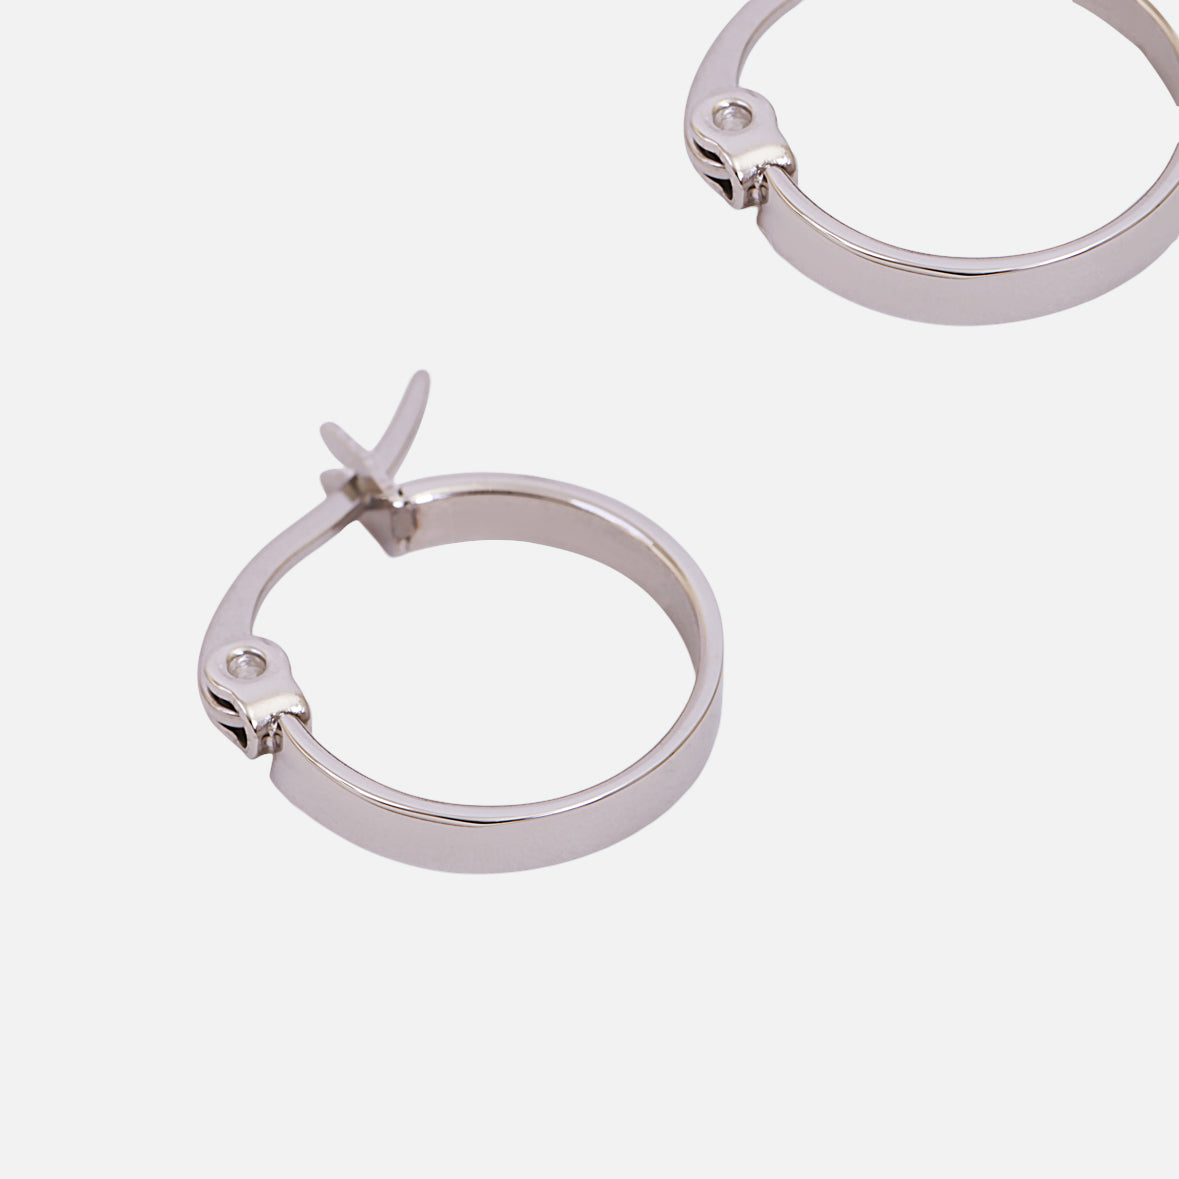 15 mm stainless steel hoop earrings